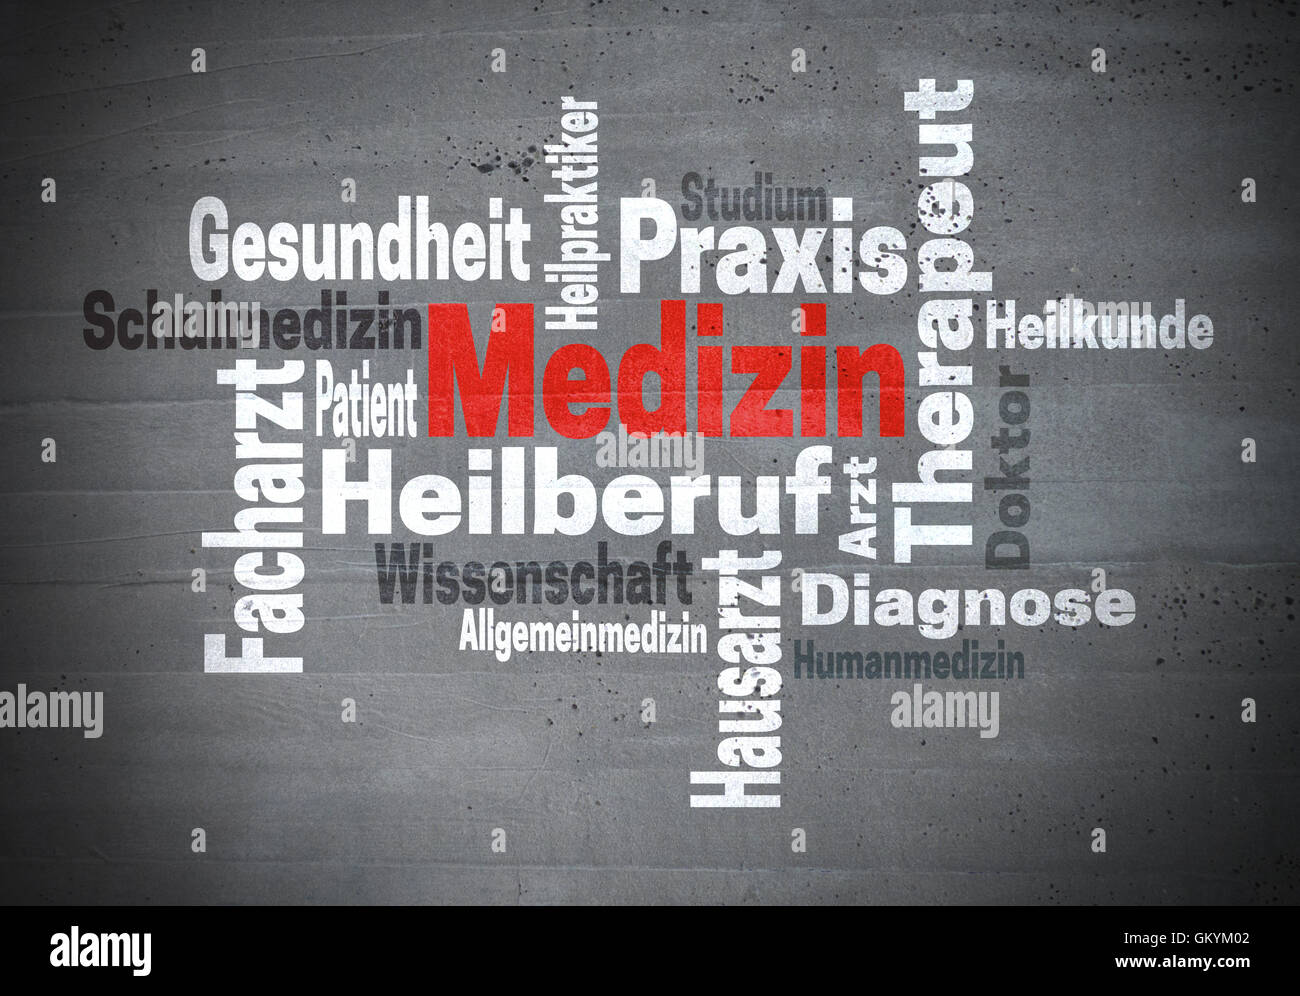 Medizin Arzt Wissenschaft (in german Medicine doctor Science) word cloud concept Stock Photo